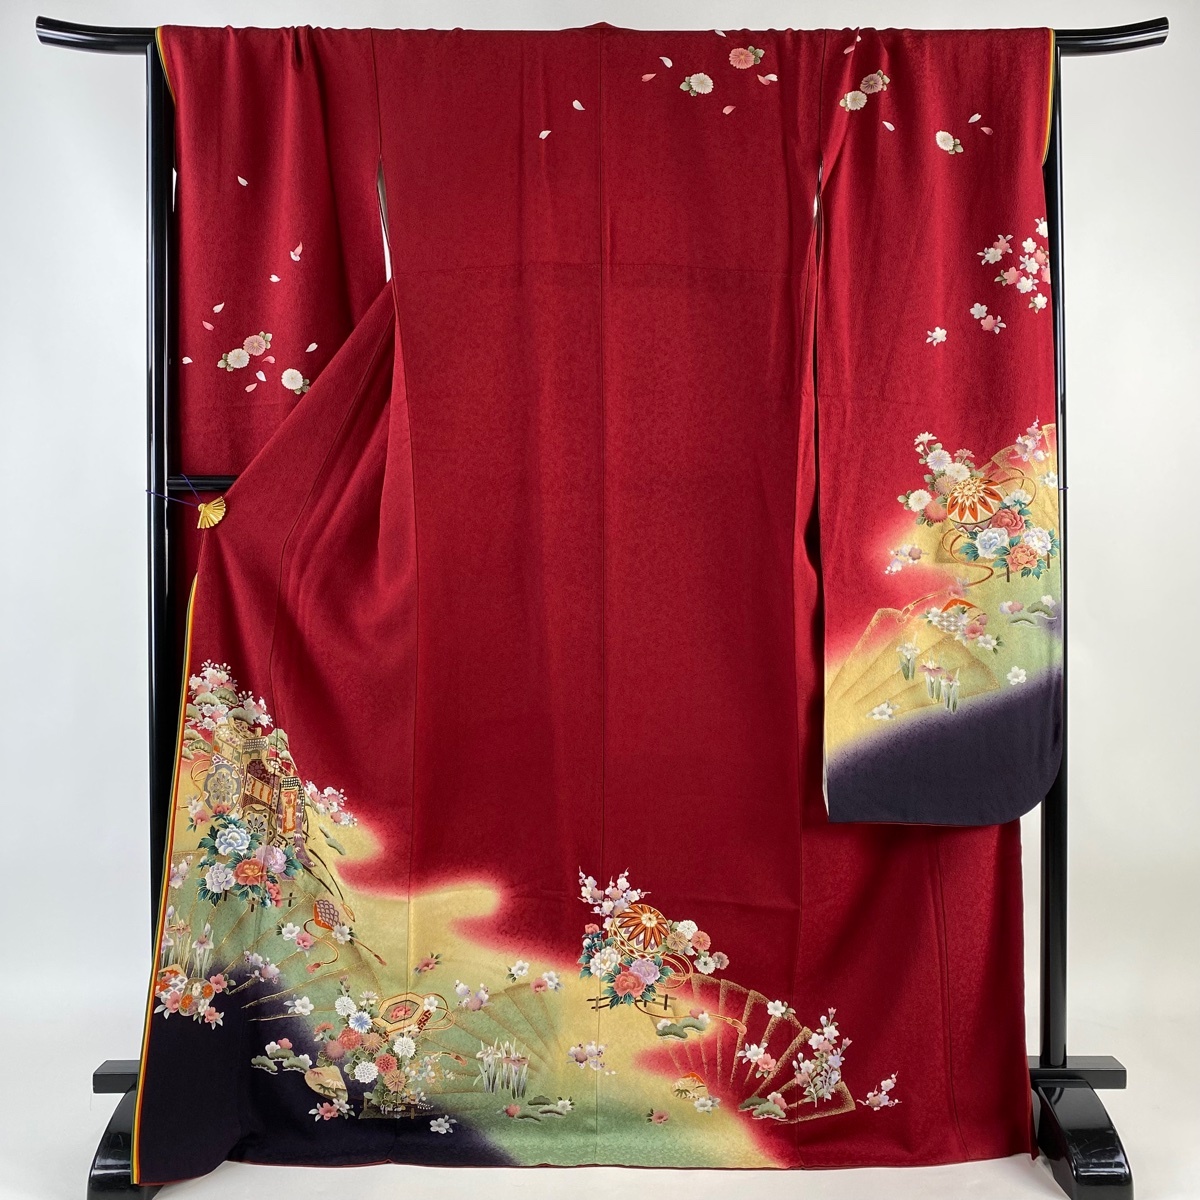  кимоно с длинными рукавами длина 173.5cm длина рукава 69cm L.. место машина . цветок вышивка золотая краска красный натуральный шелк прекрасный наименование товара товар [ б/у ]